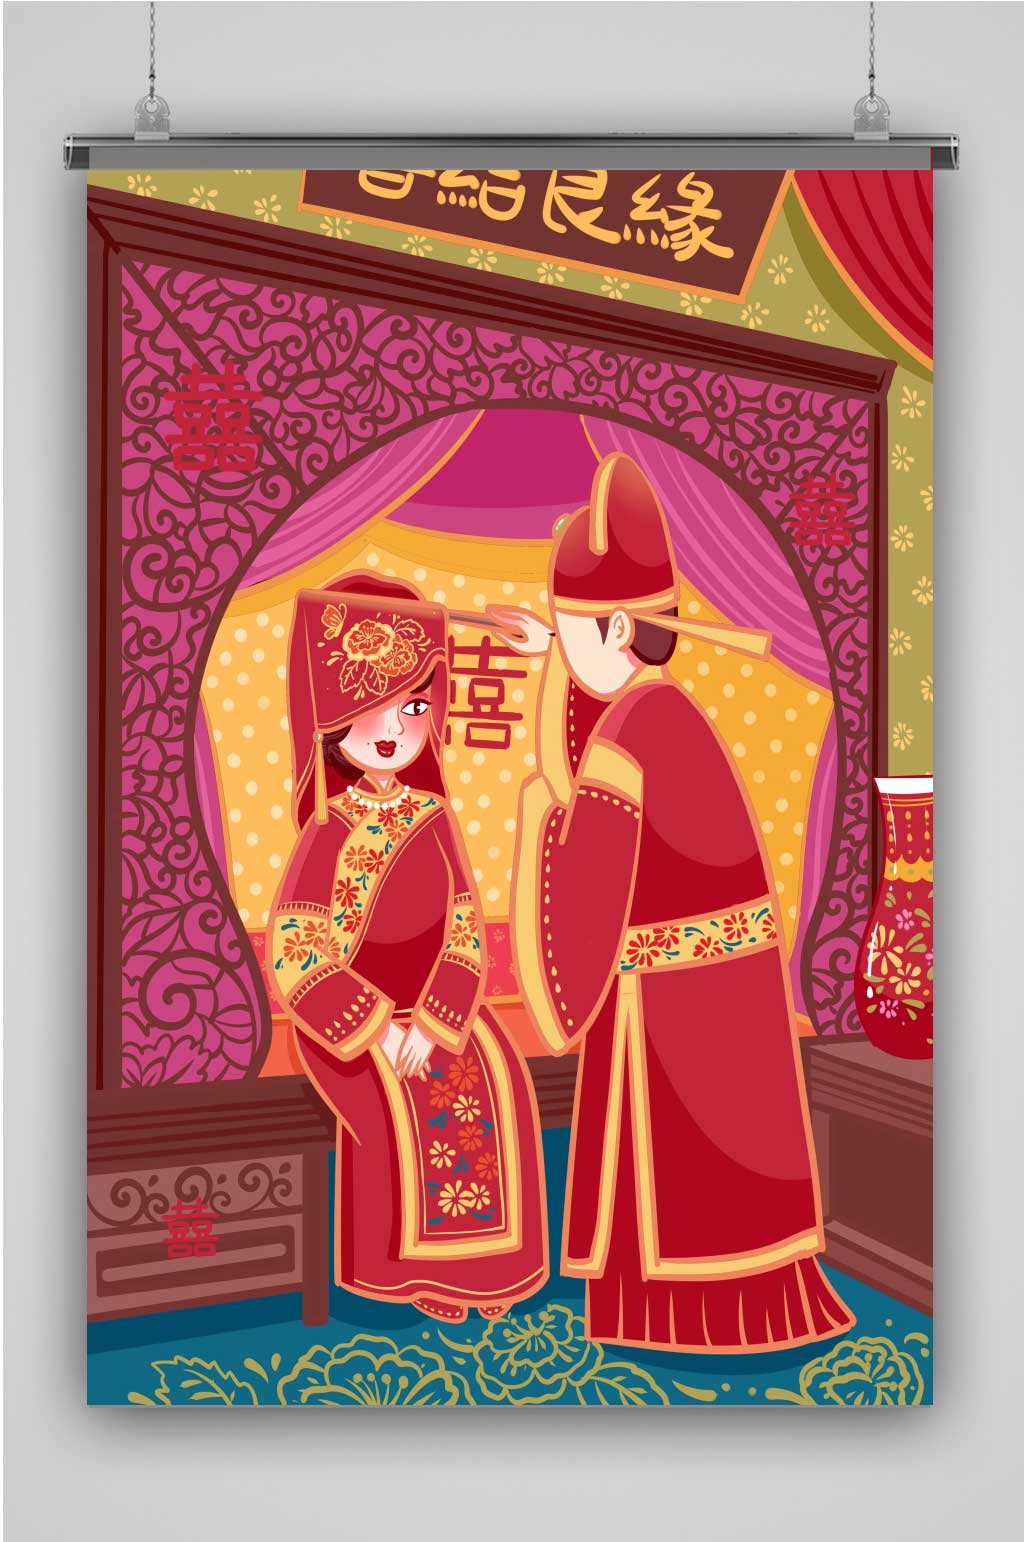 原创手绘中国风传统古典婚礼入洞房插画